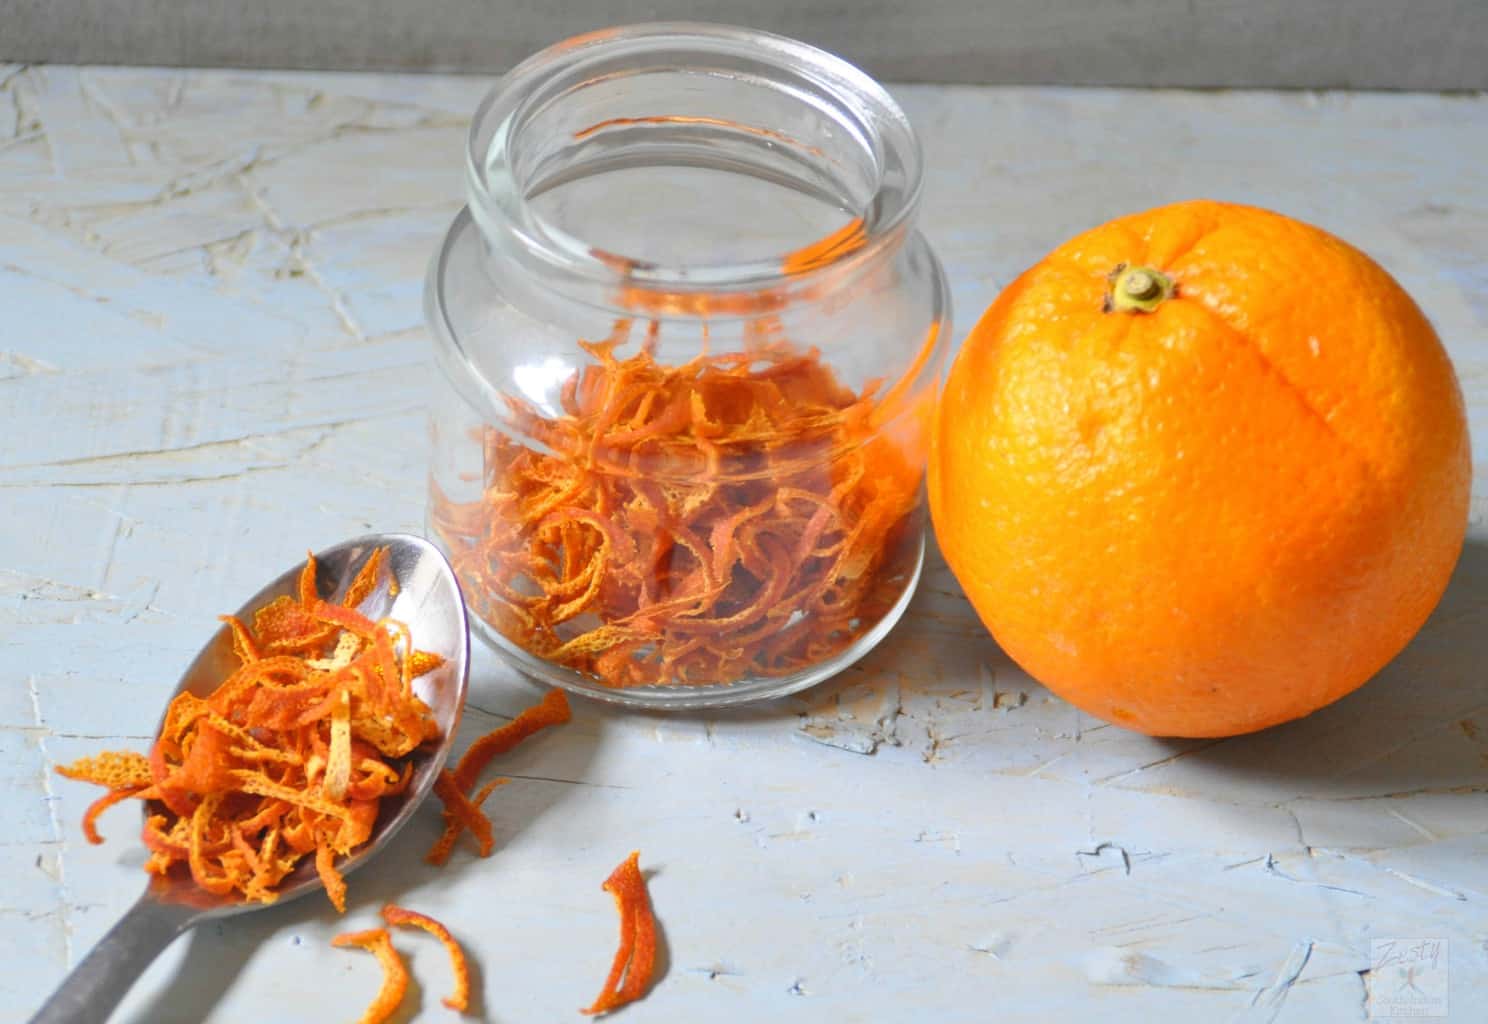 10 Amazing Ways To Use Orange Peels